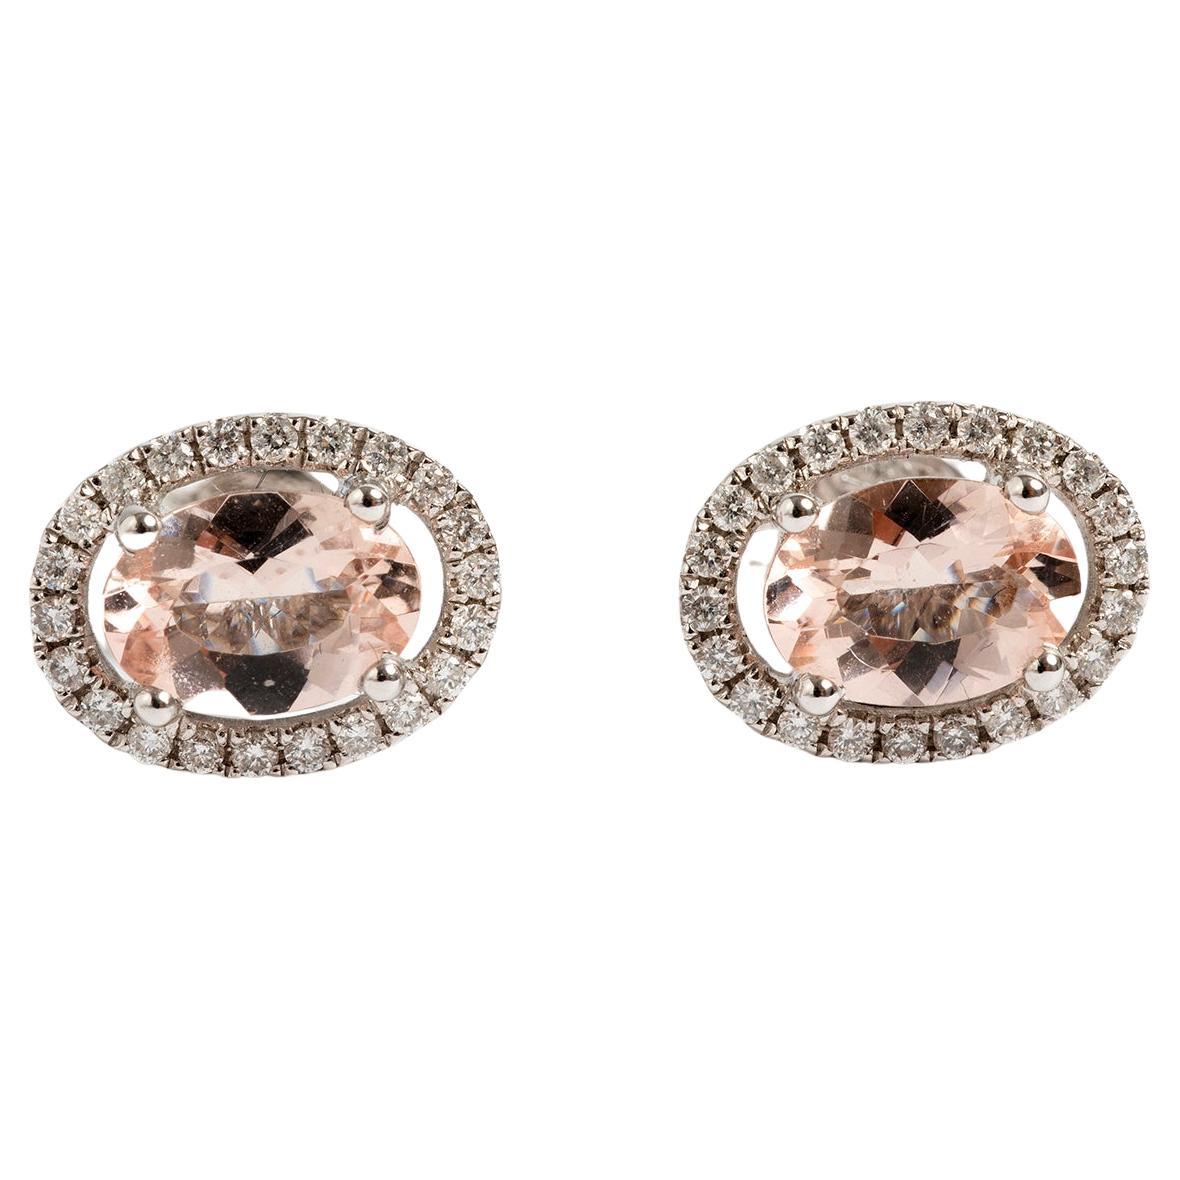 Diamond & Morganite Earrings, Set in 18 Carat White Gold. For Sale